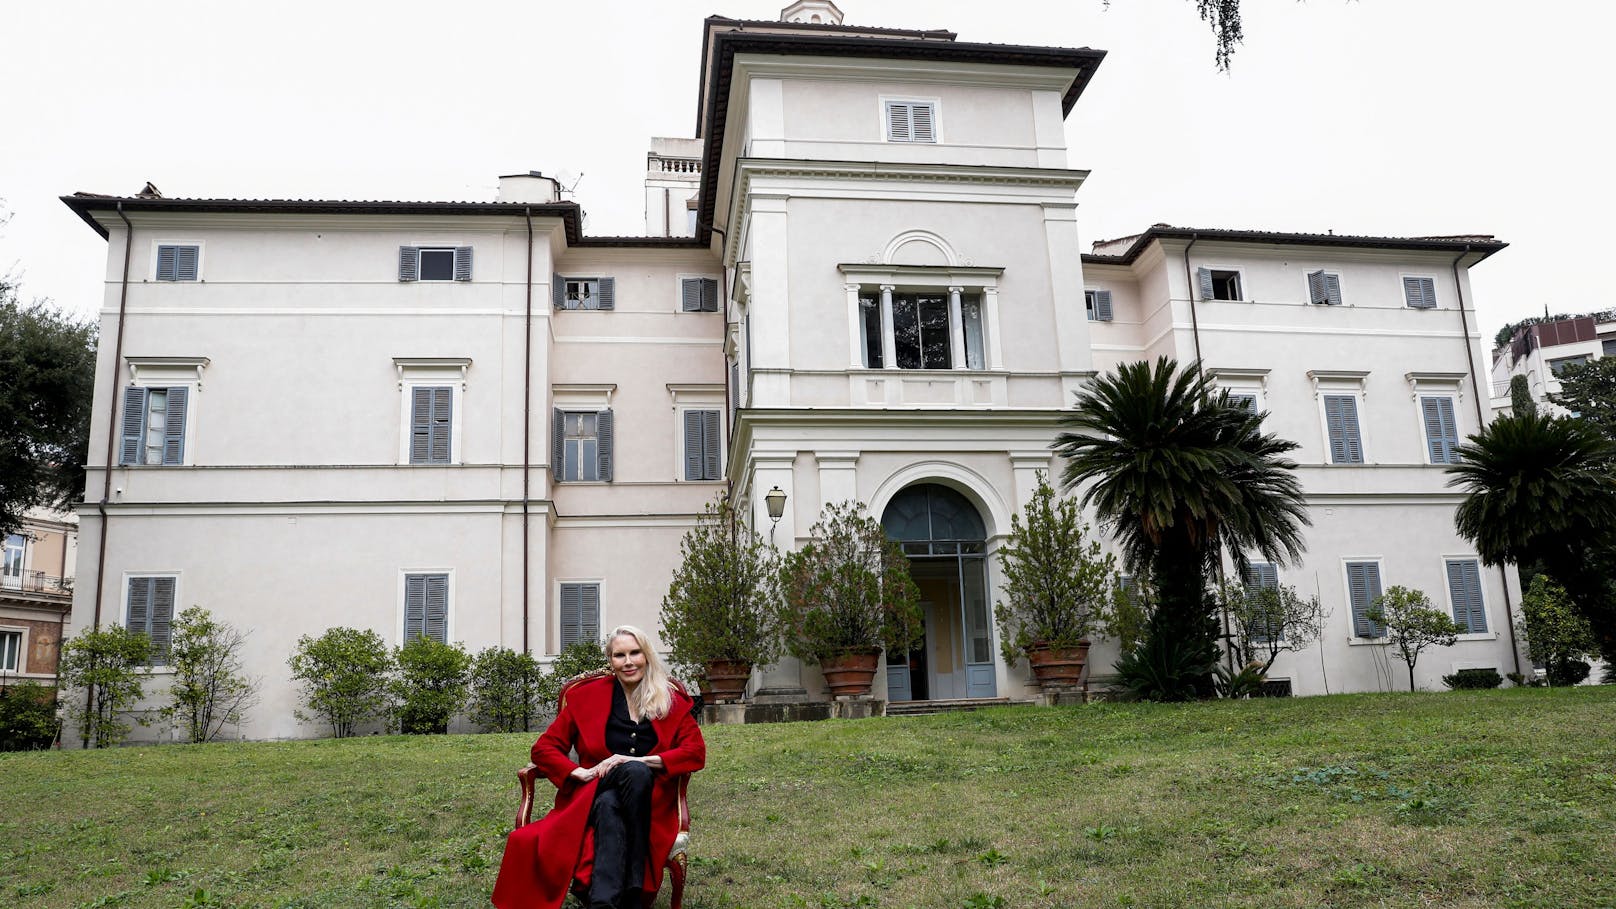 Prinzessin Rita Carpenter Boncompagni Ludovisi wohnte zuletzt mit ihrem Mann Fürst Nicolò Boncompagni Ludovisi, Prinz von Piombino, in der einzigartigen Villa in Rom.